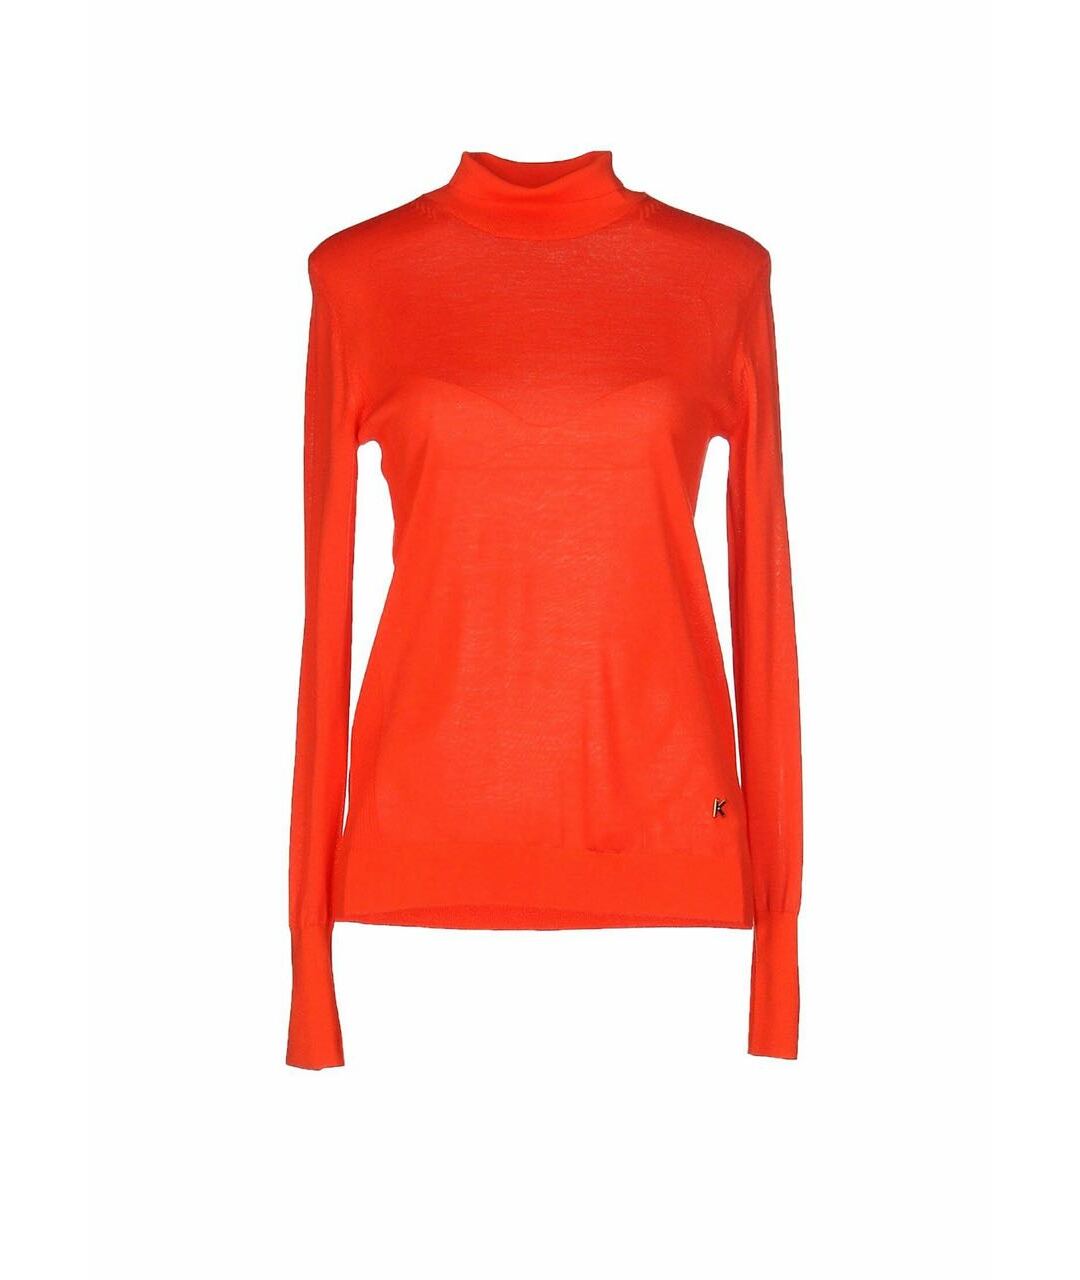 KENZO Оранжевый шерстяной джемпер / свитер, фото 1